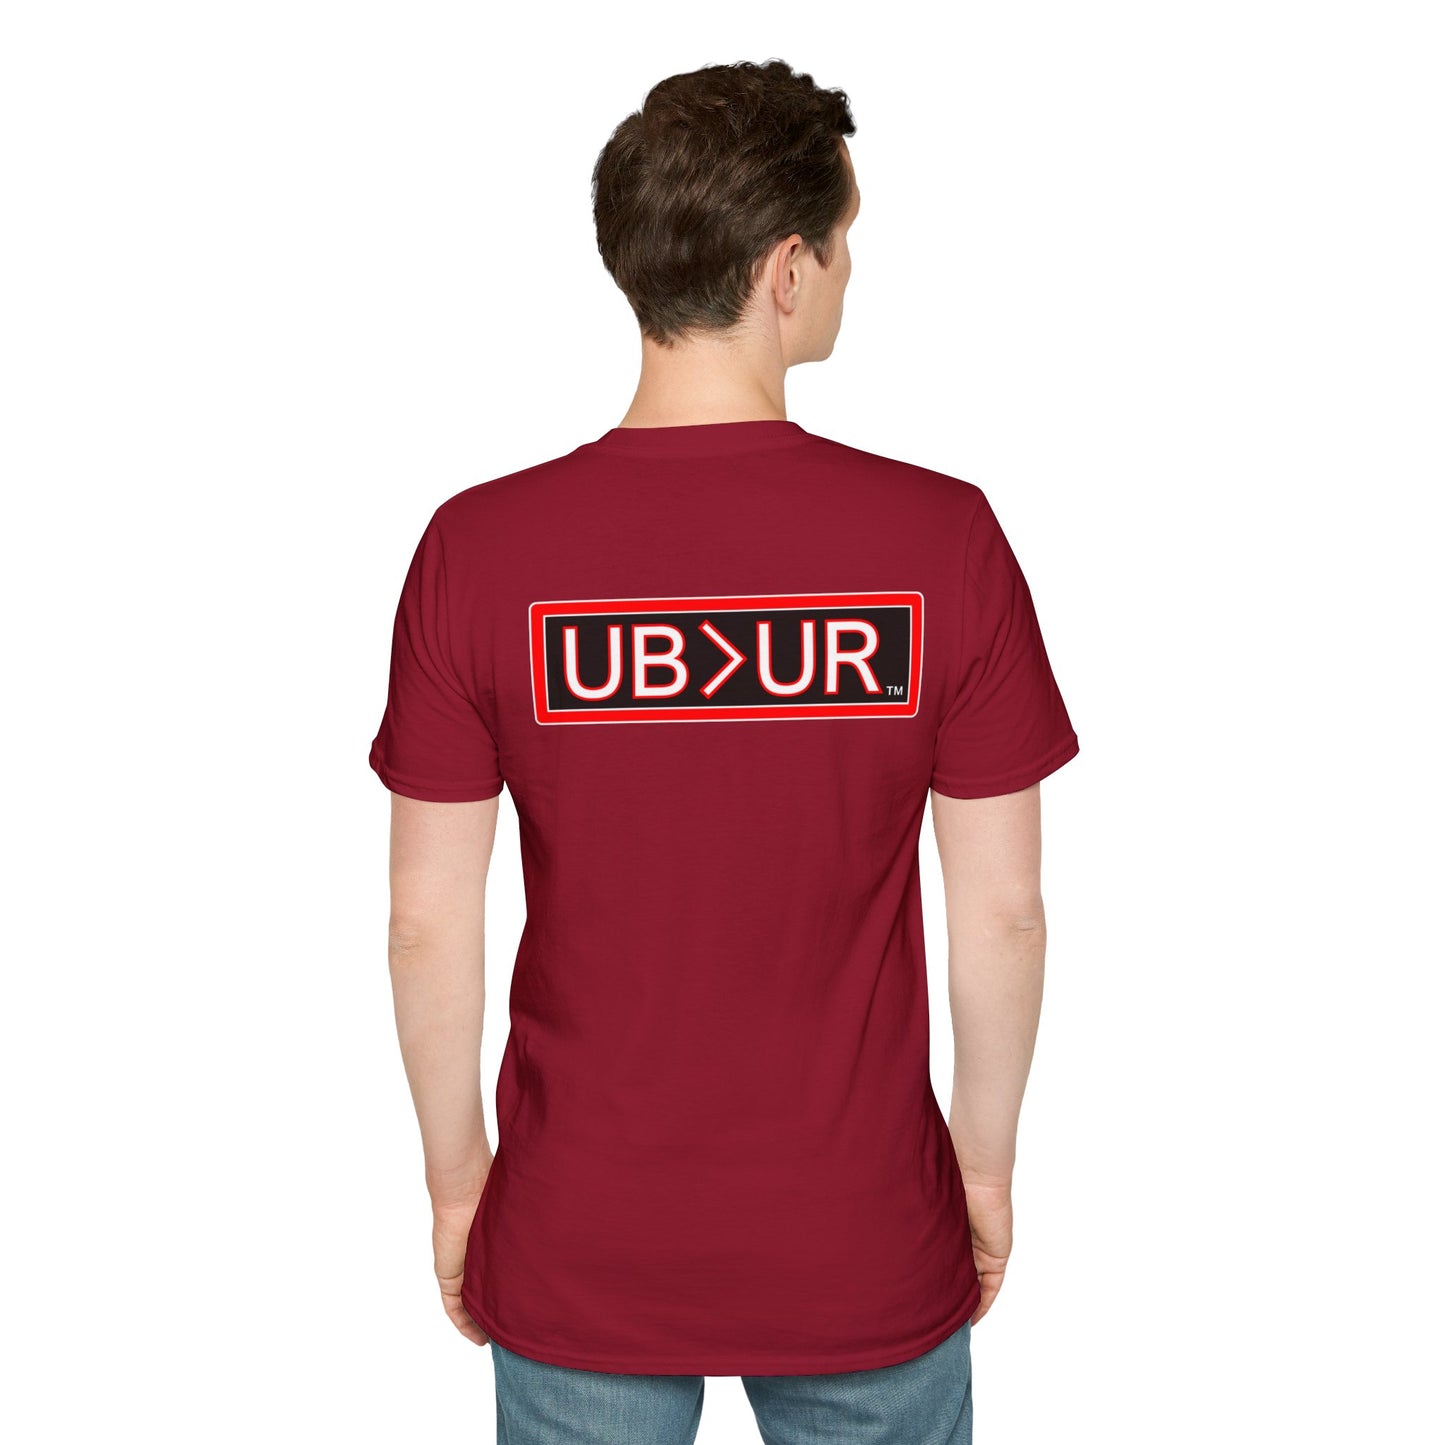 Untamed UB>UR- Unisex Softstyle T-Shirt